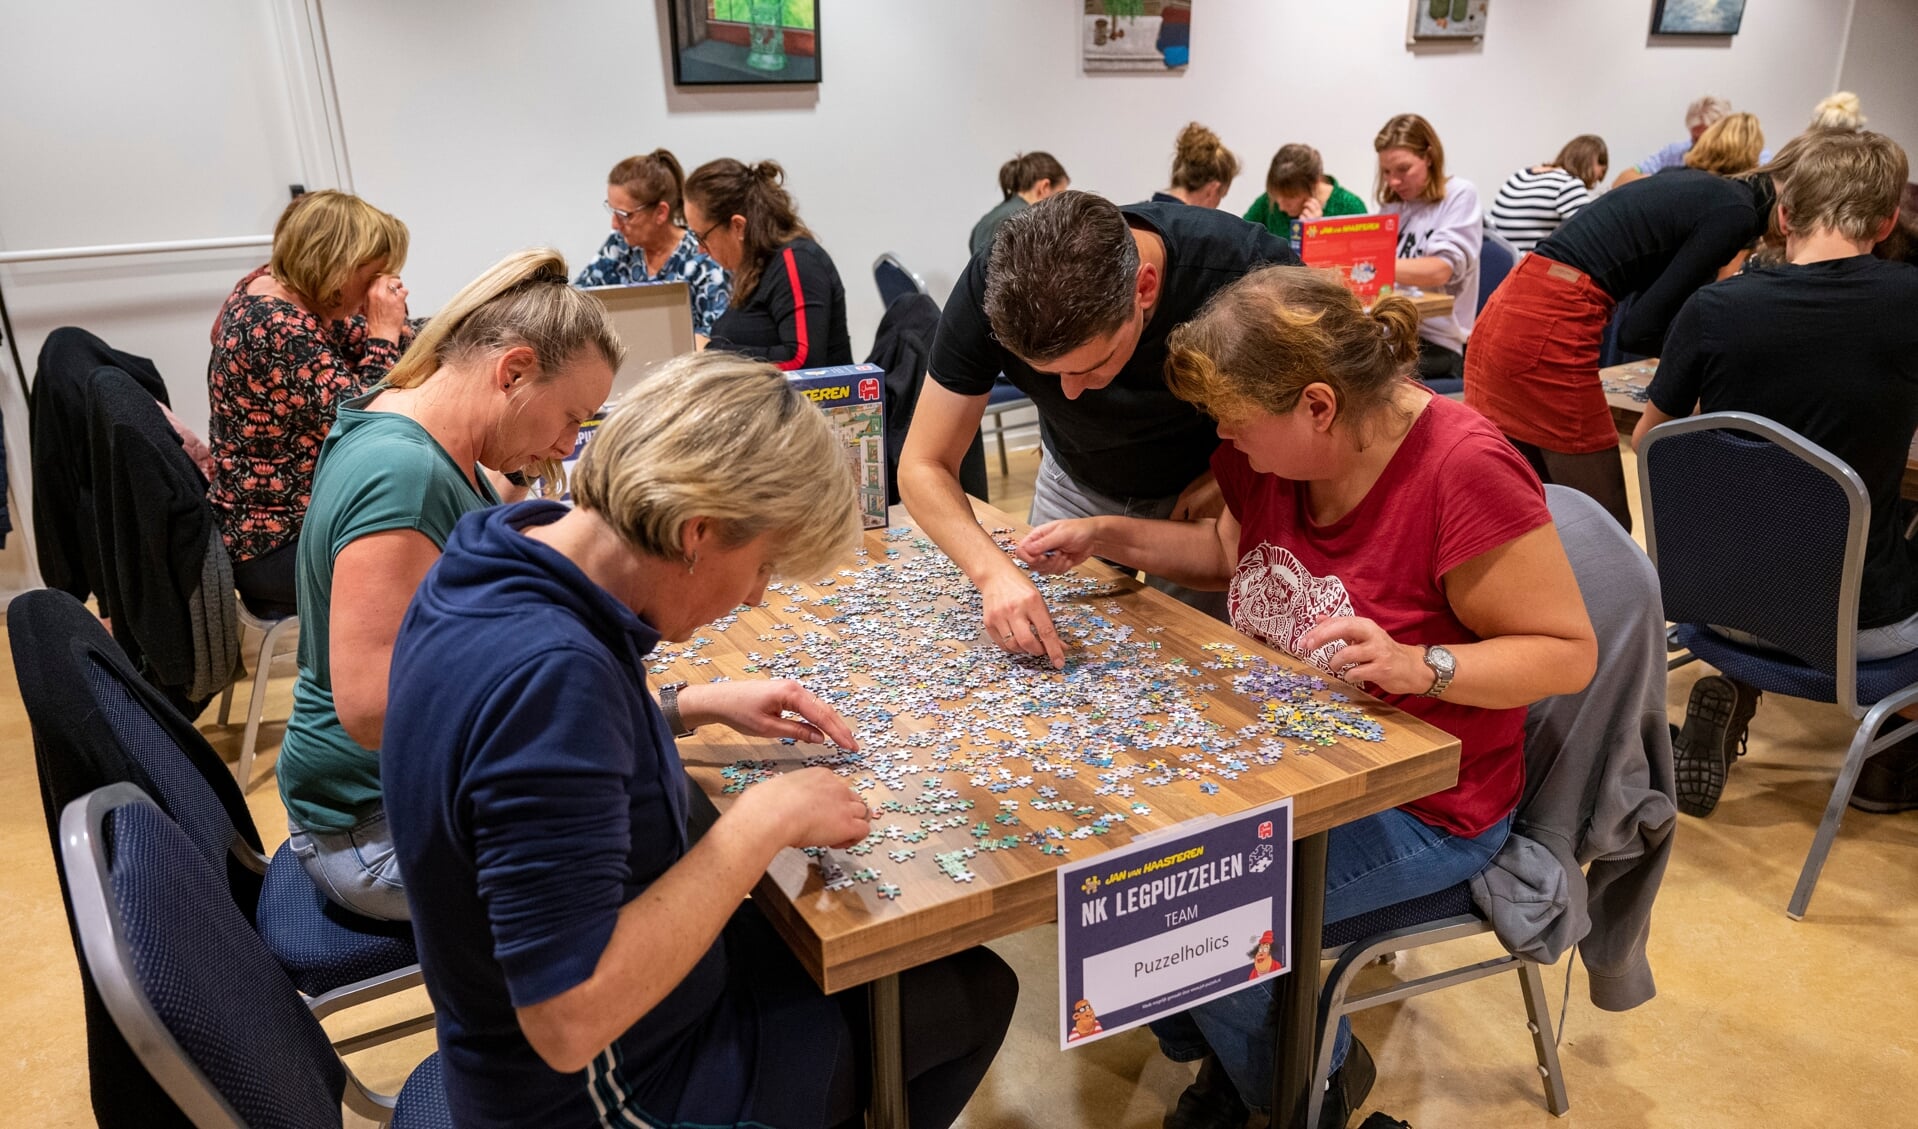 Bij het NK Legpuzzelen draait het er om in teamverband zo snel mogelijk een puzzel van 1000 stukjes te leggen. Foto: Dimmy Olijerhoek Fotografie